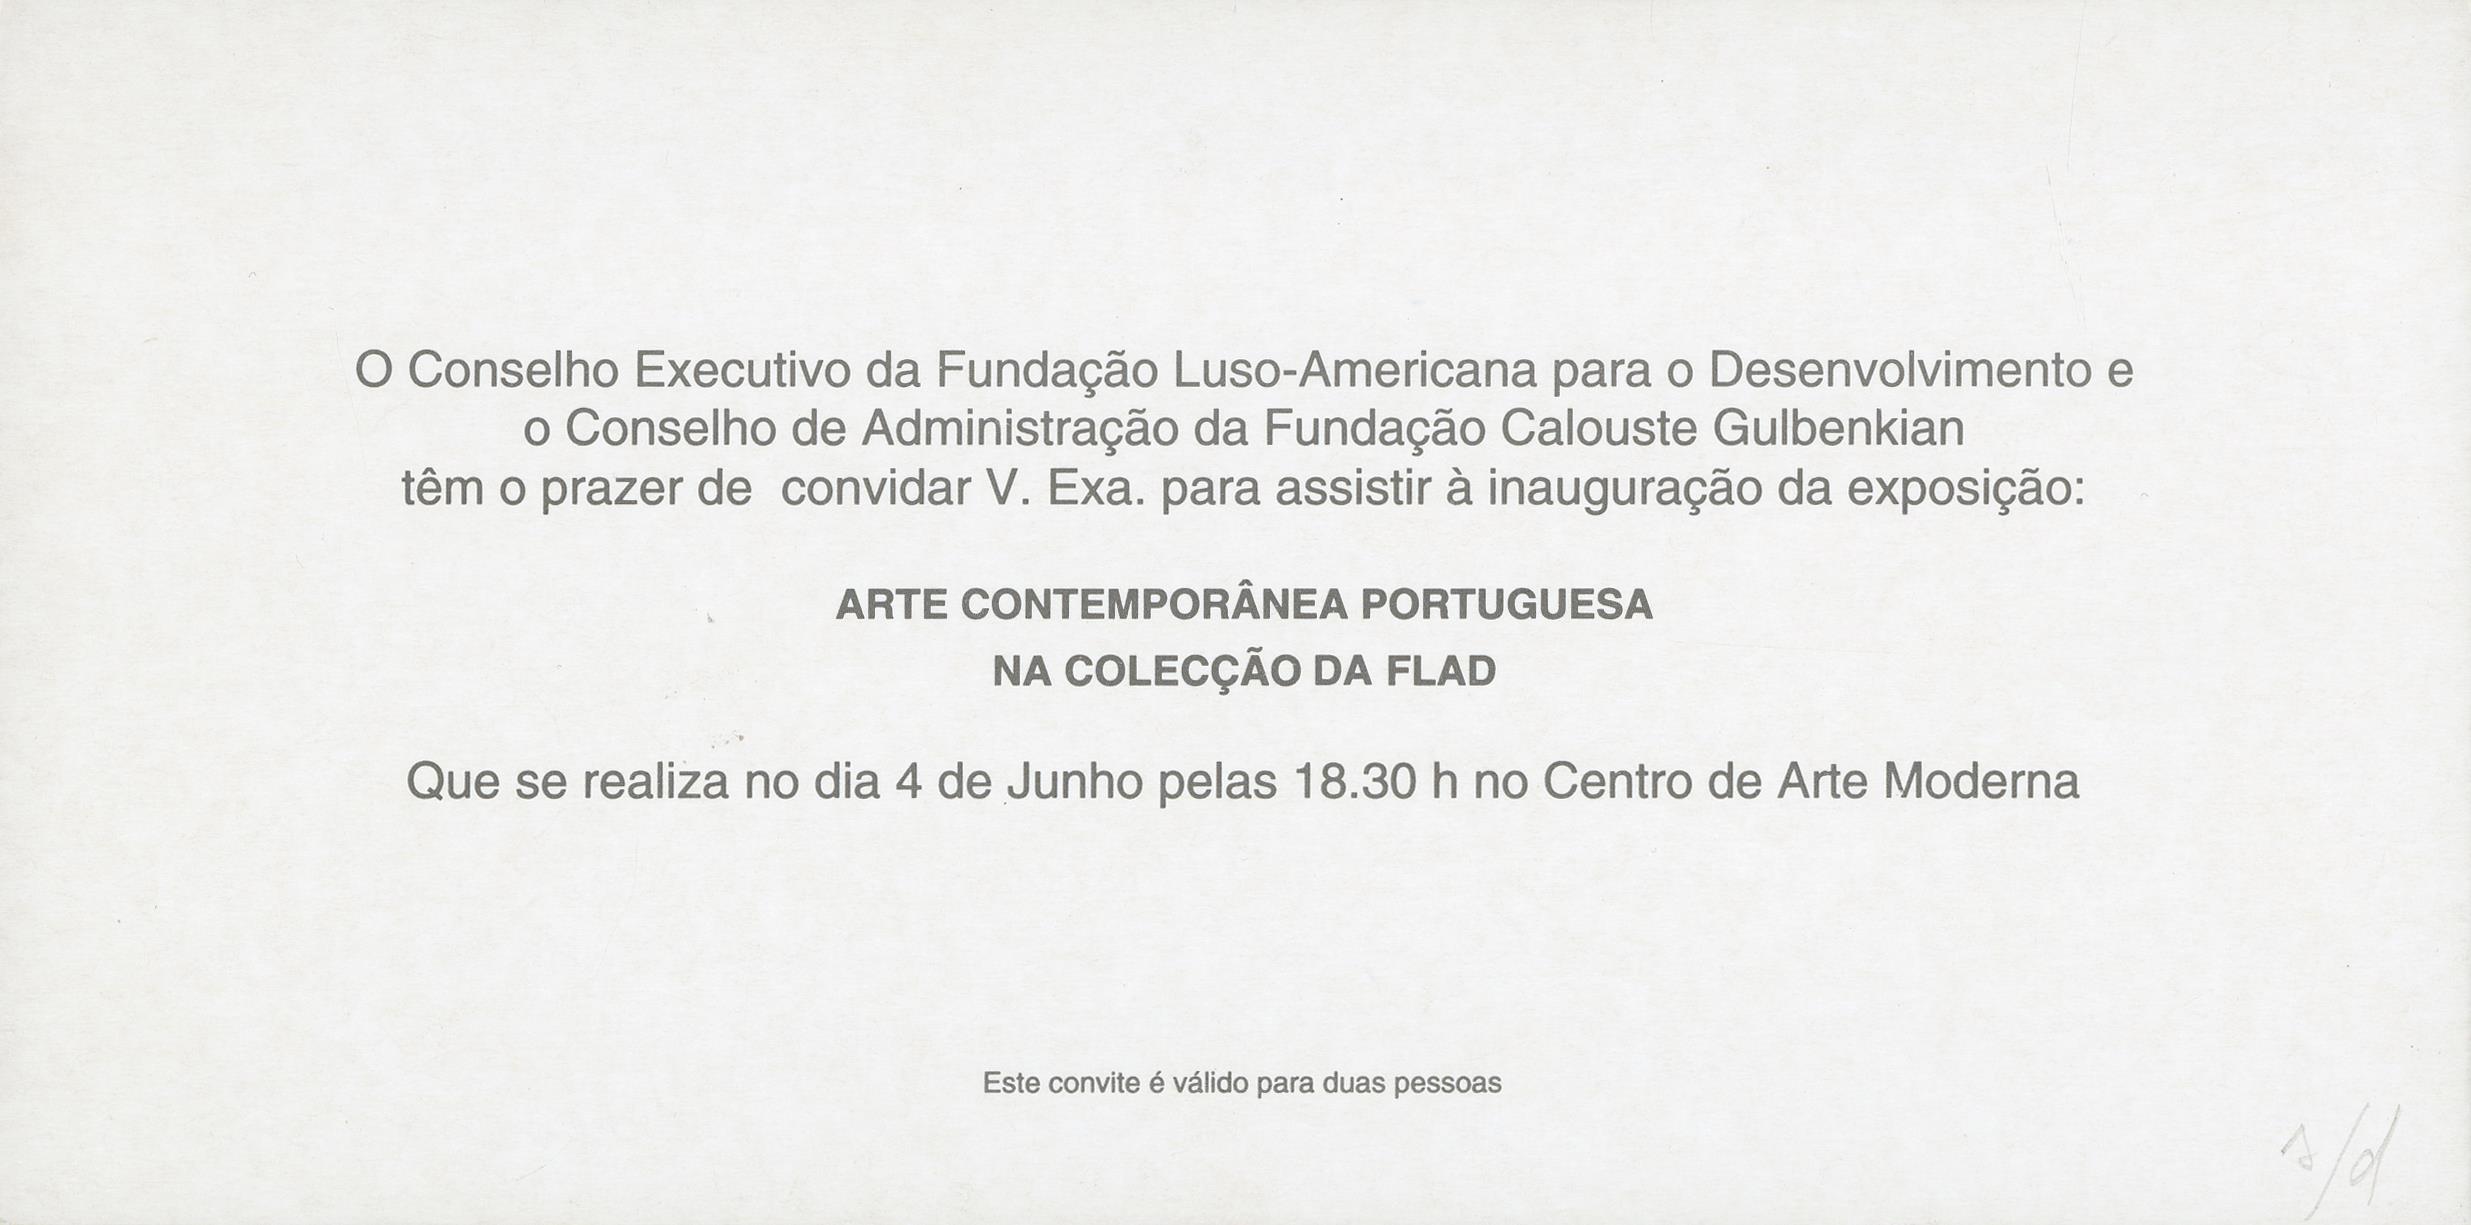 Arte Portuguesa Contemporânea na Colecção da Fundação Luso-Americana para o Desenvolvimento